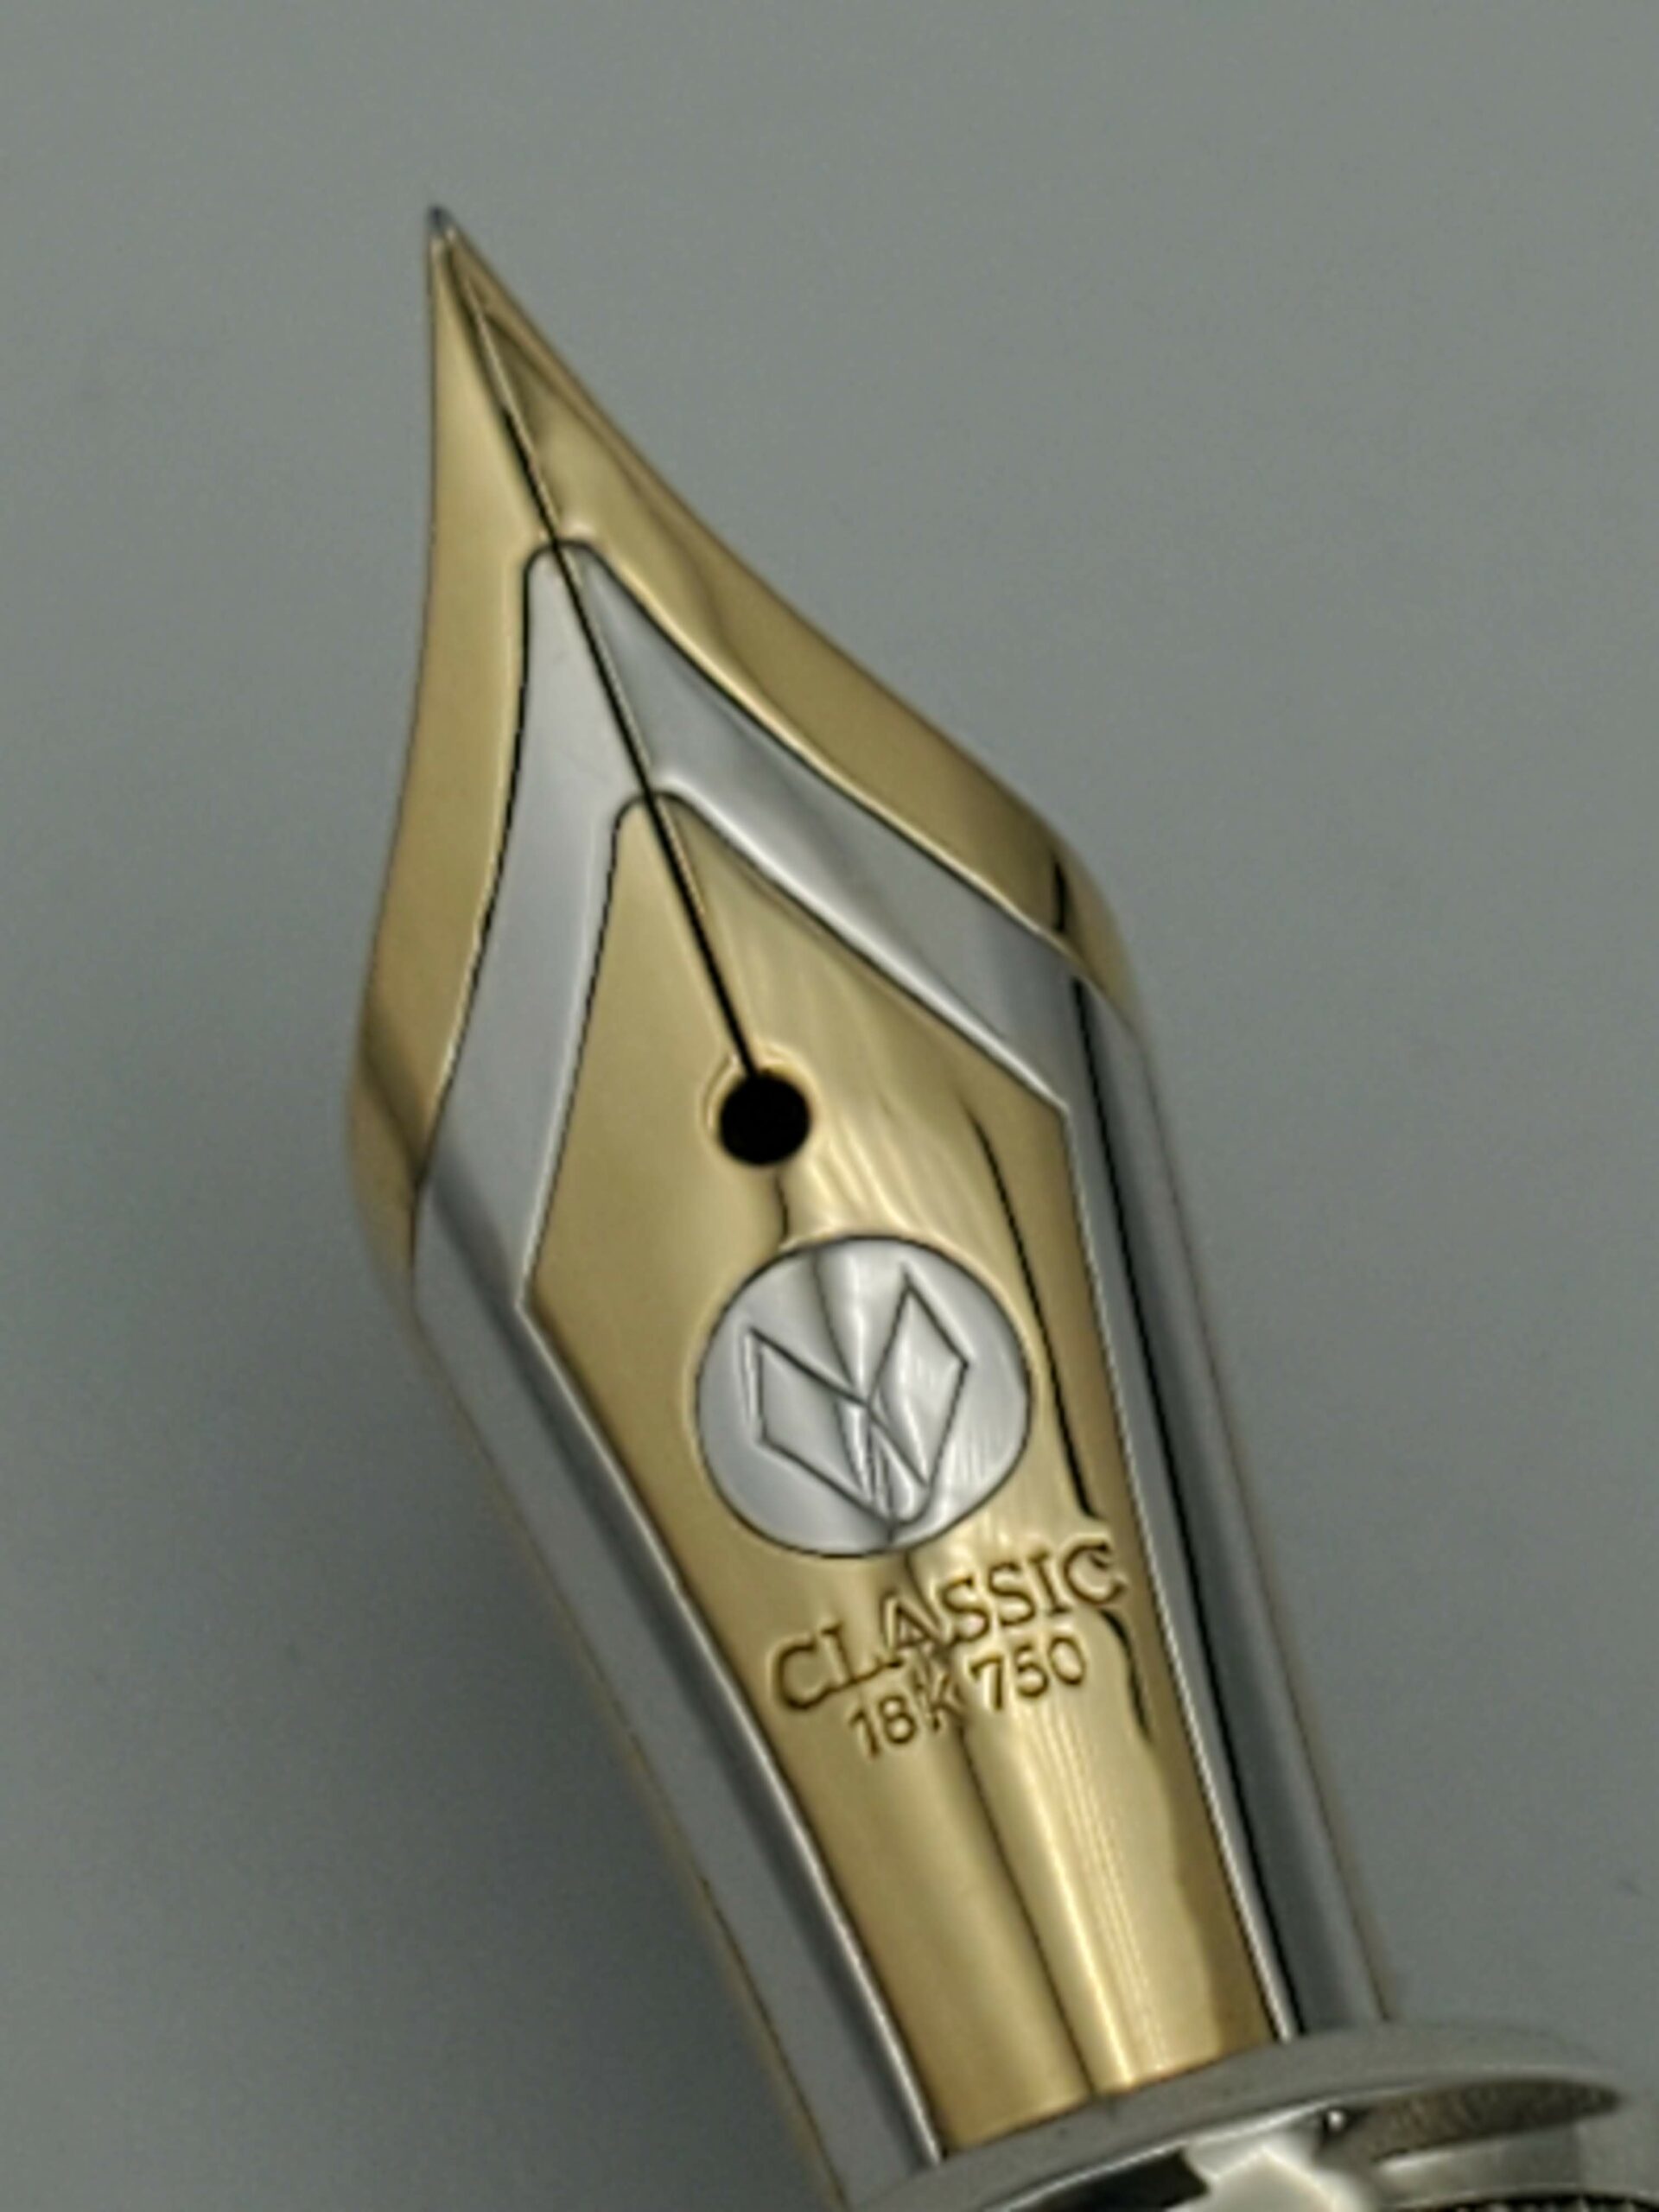 Loclen Classica Brass Fountain Pen or Roller Pen